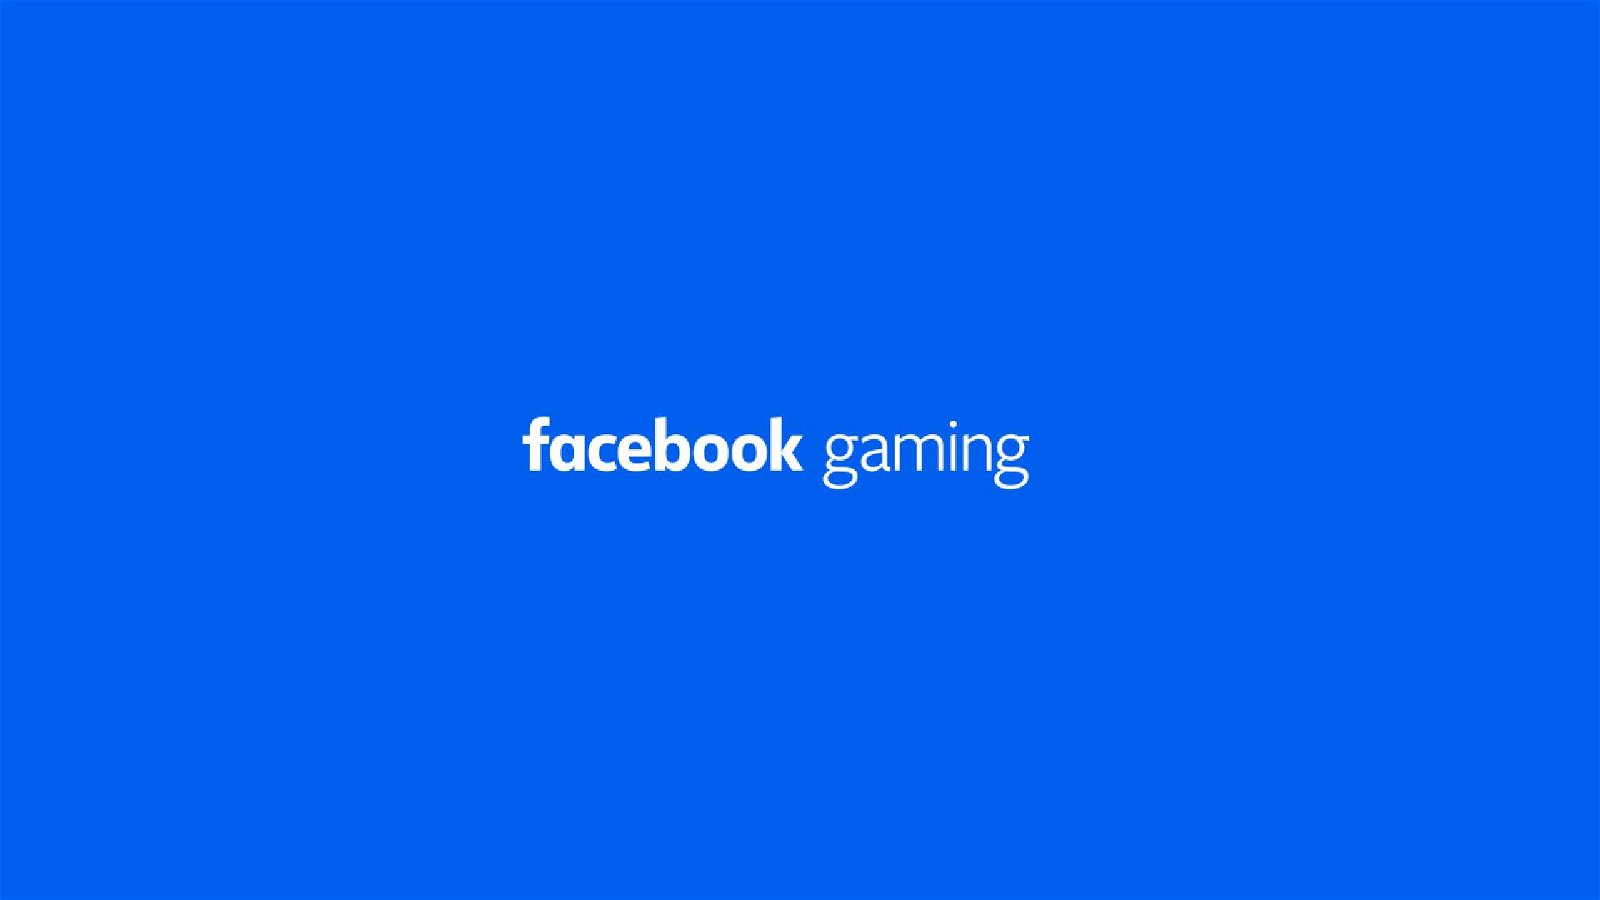 Immagine di Facebook Gaming insegue Twitch e cresce del 210% a dicembre 2019